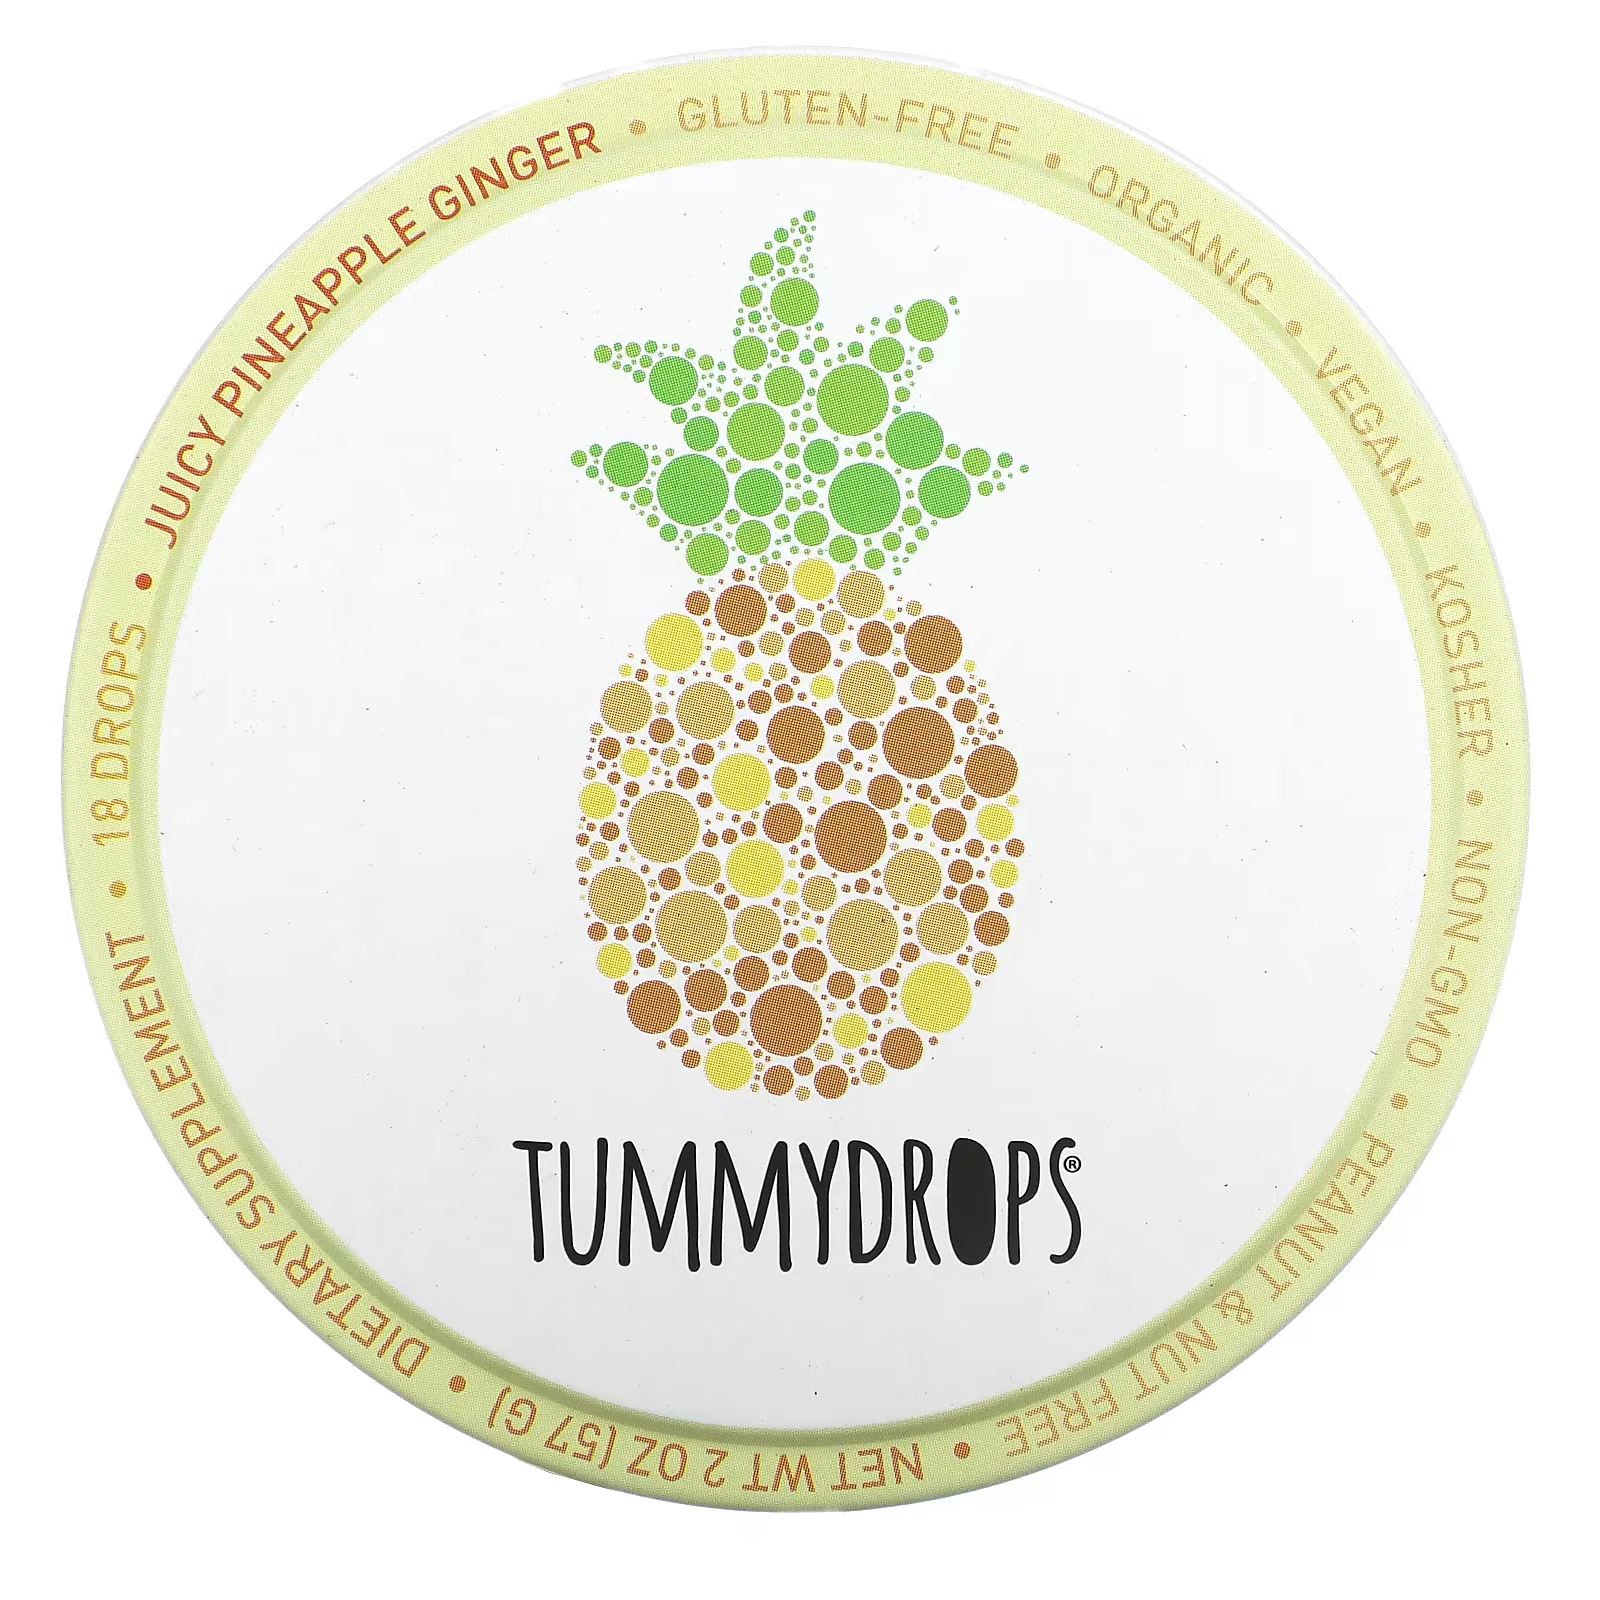 Капли имбирные Tummydrops ананасовые, 18 капель tummydrops сочные капли с ананасом и имбирем 18 капель 57 г 2 унции